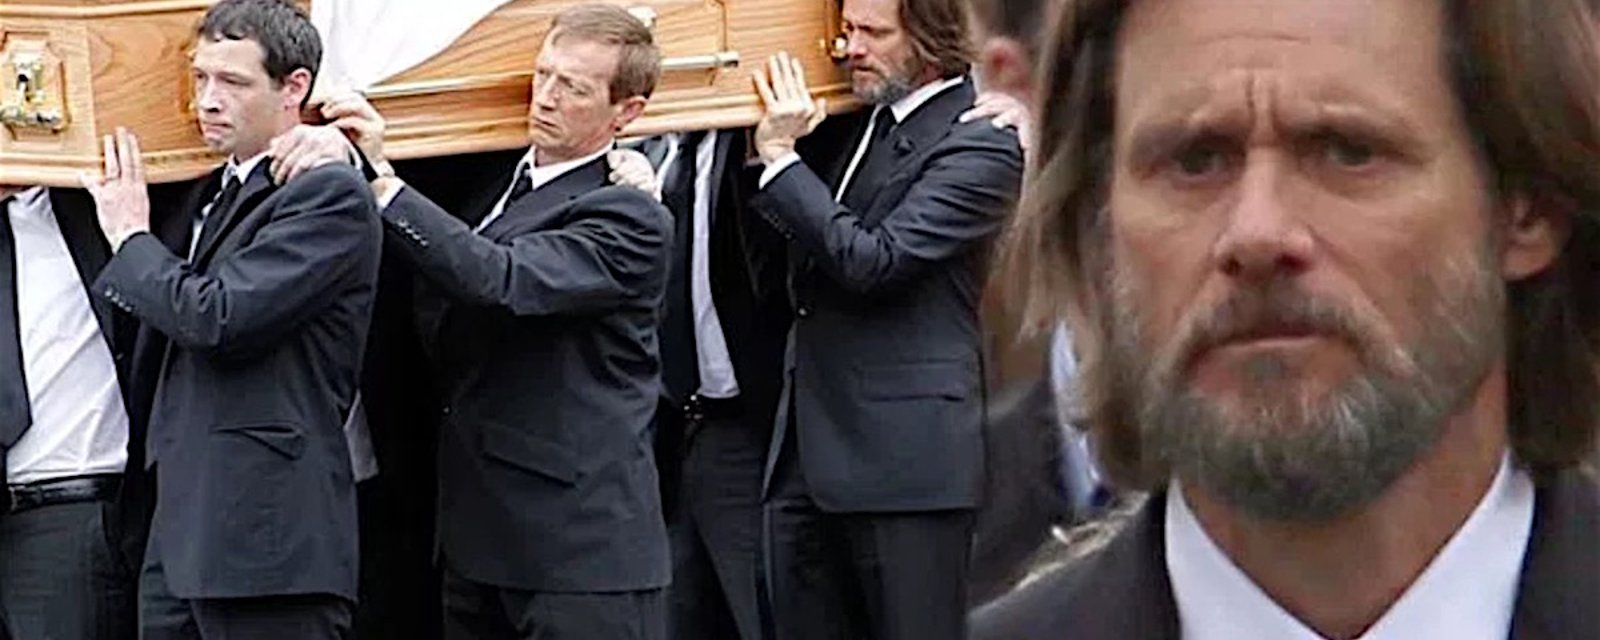 Jim Carrey dans l'eau chaude suite à la mort de sa conjointe